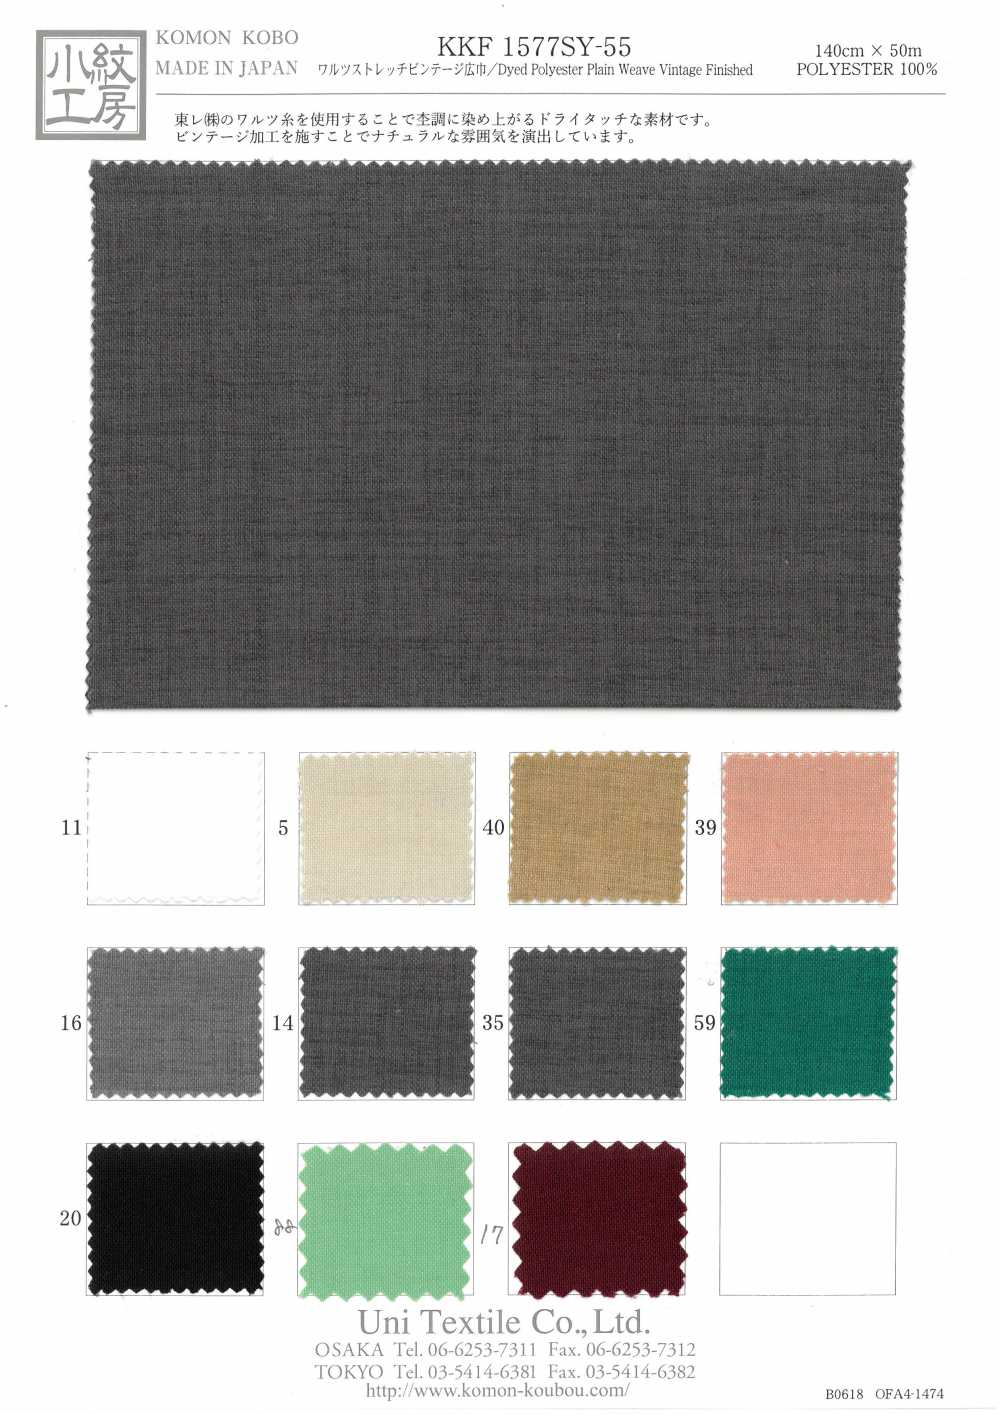 KKF1577SY-55 Breite Breite[Textilgewebe] Uni Textile